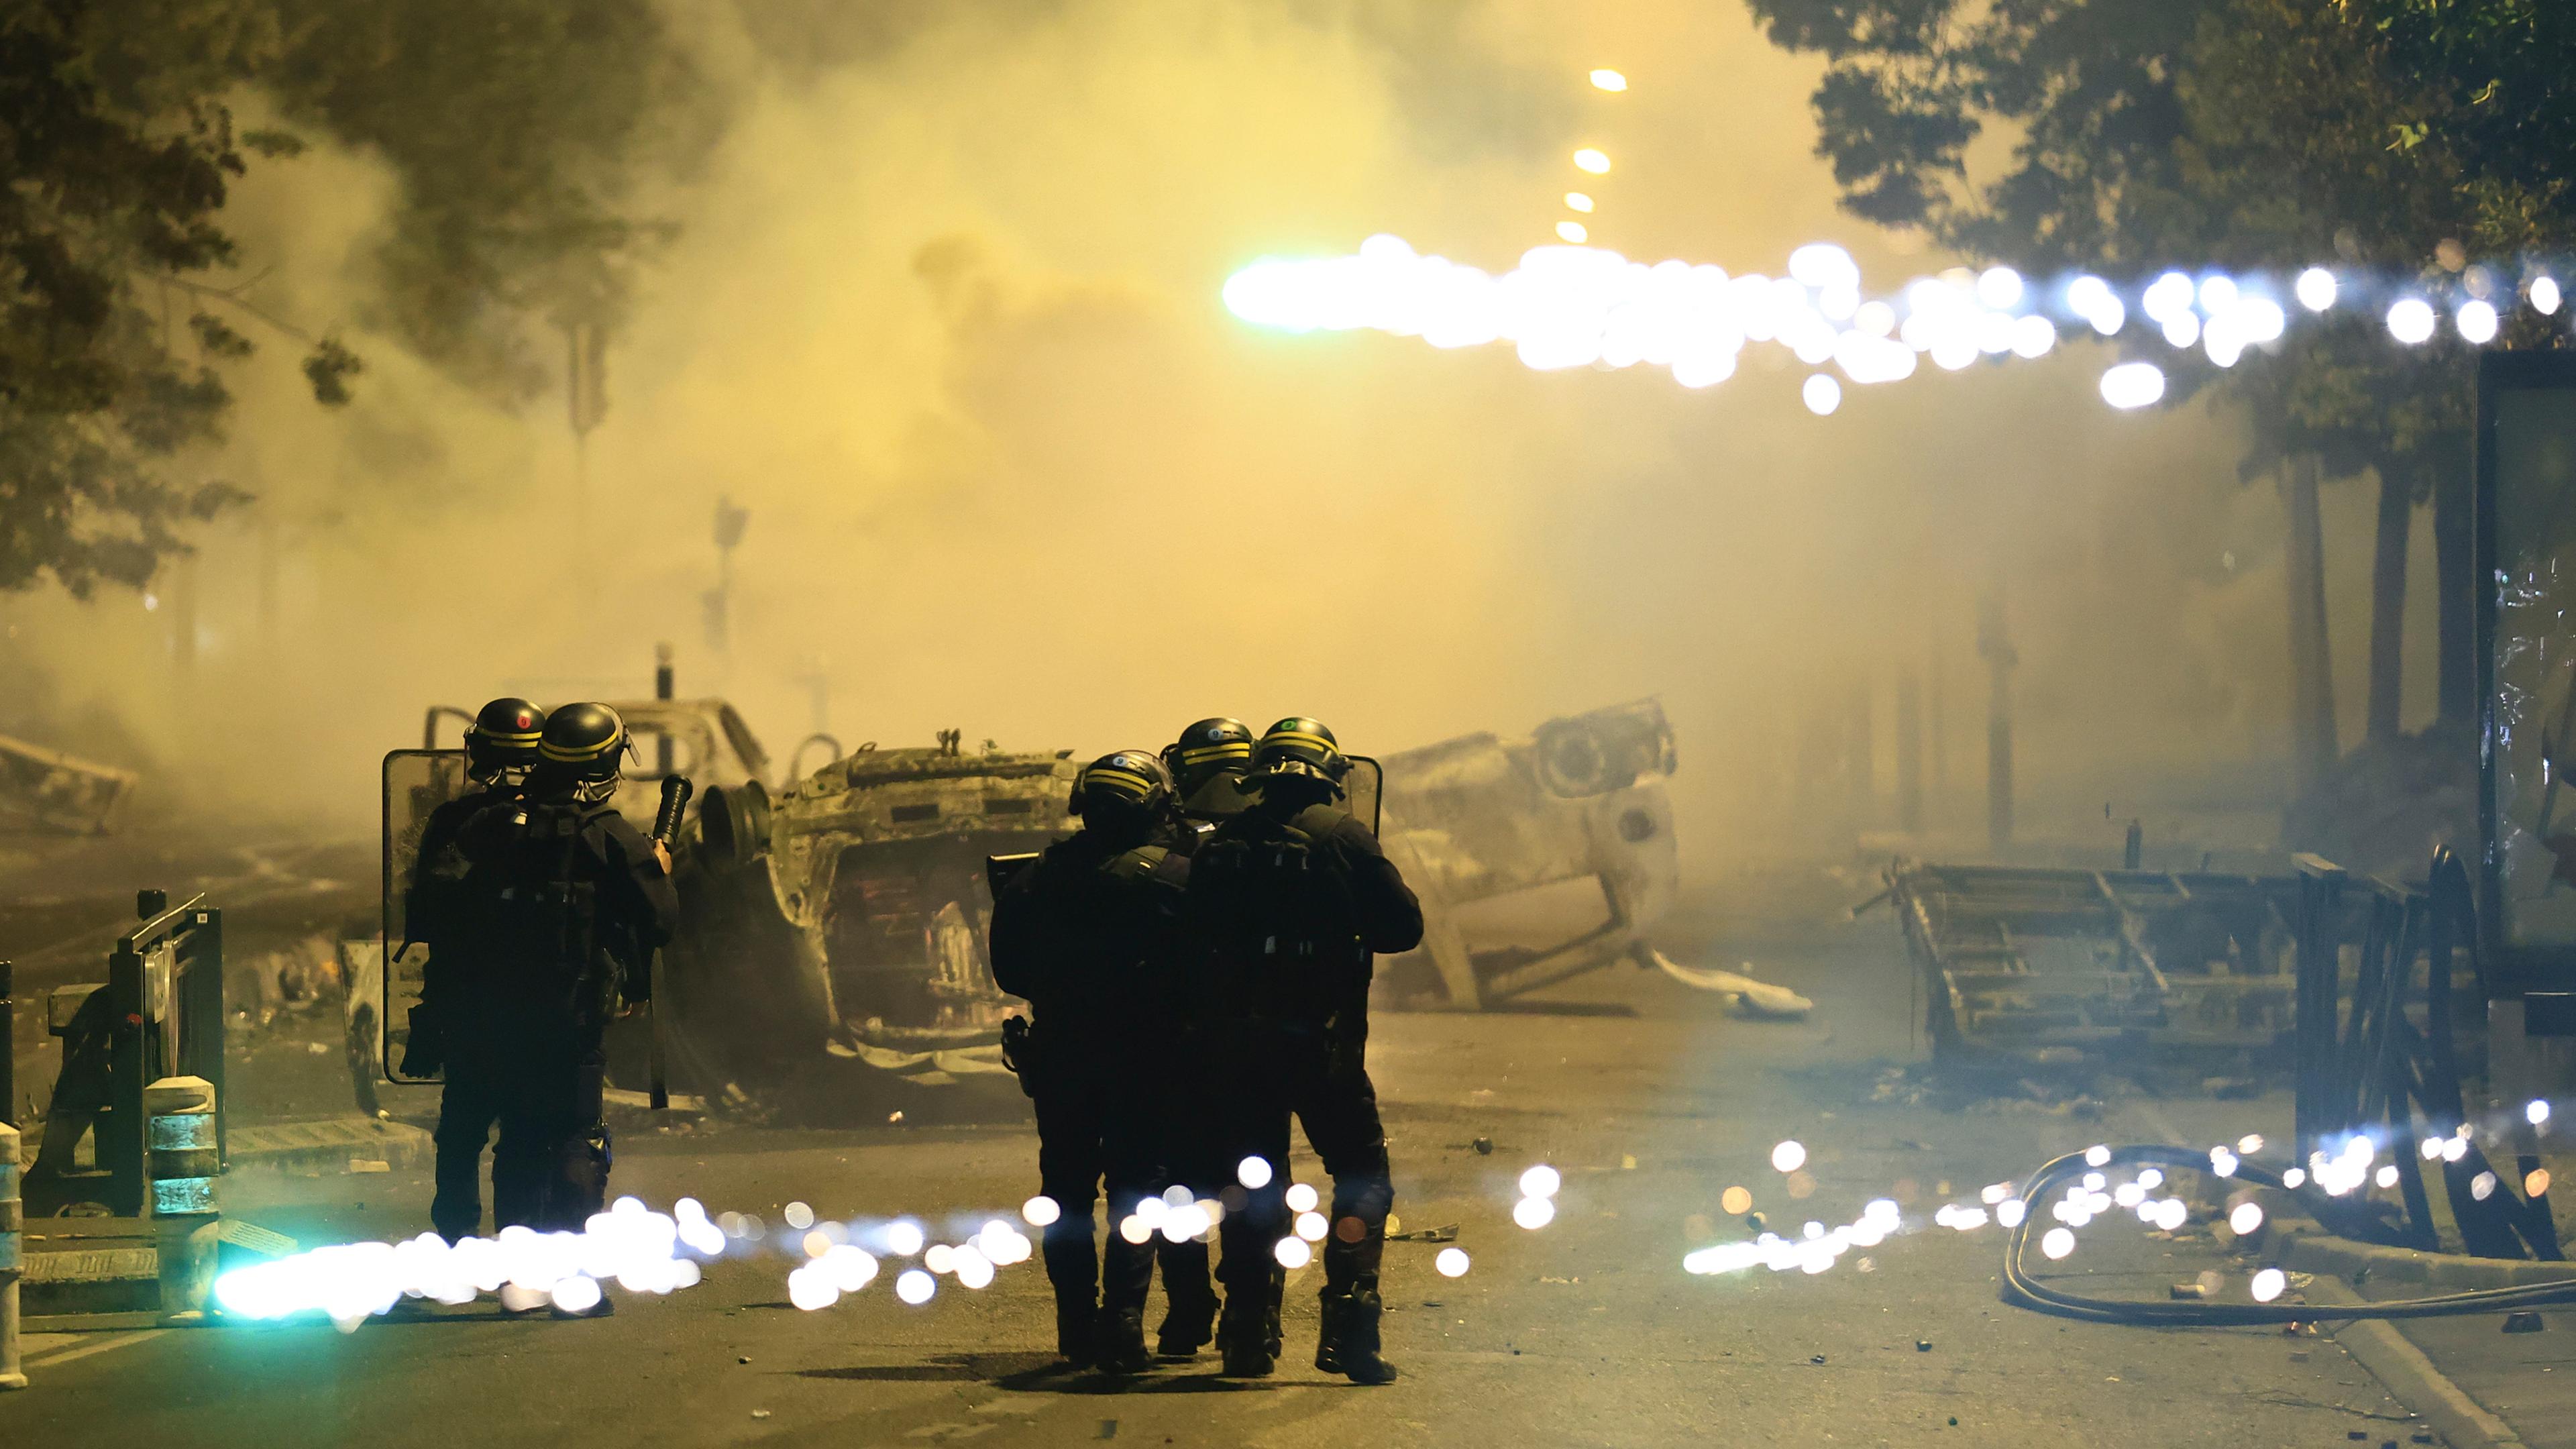 Beamte der Bereitschaftspolizei patrouillieren bei Unruhen auf einer Straße, während Feuerwerkskörper explodieren. 